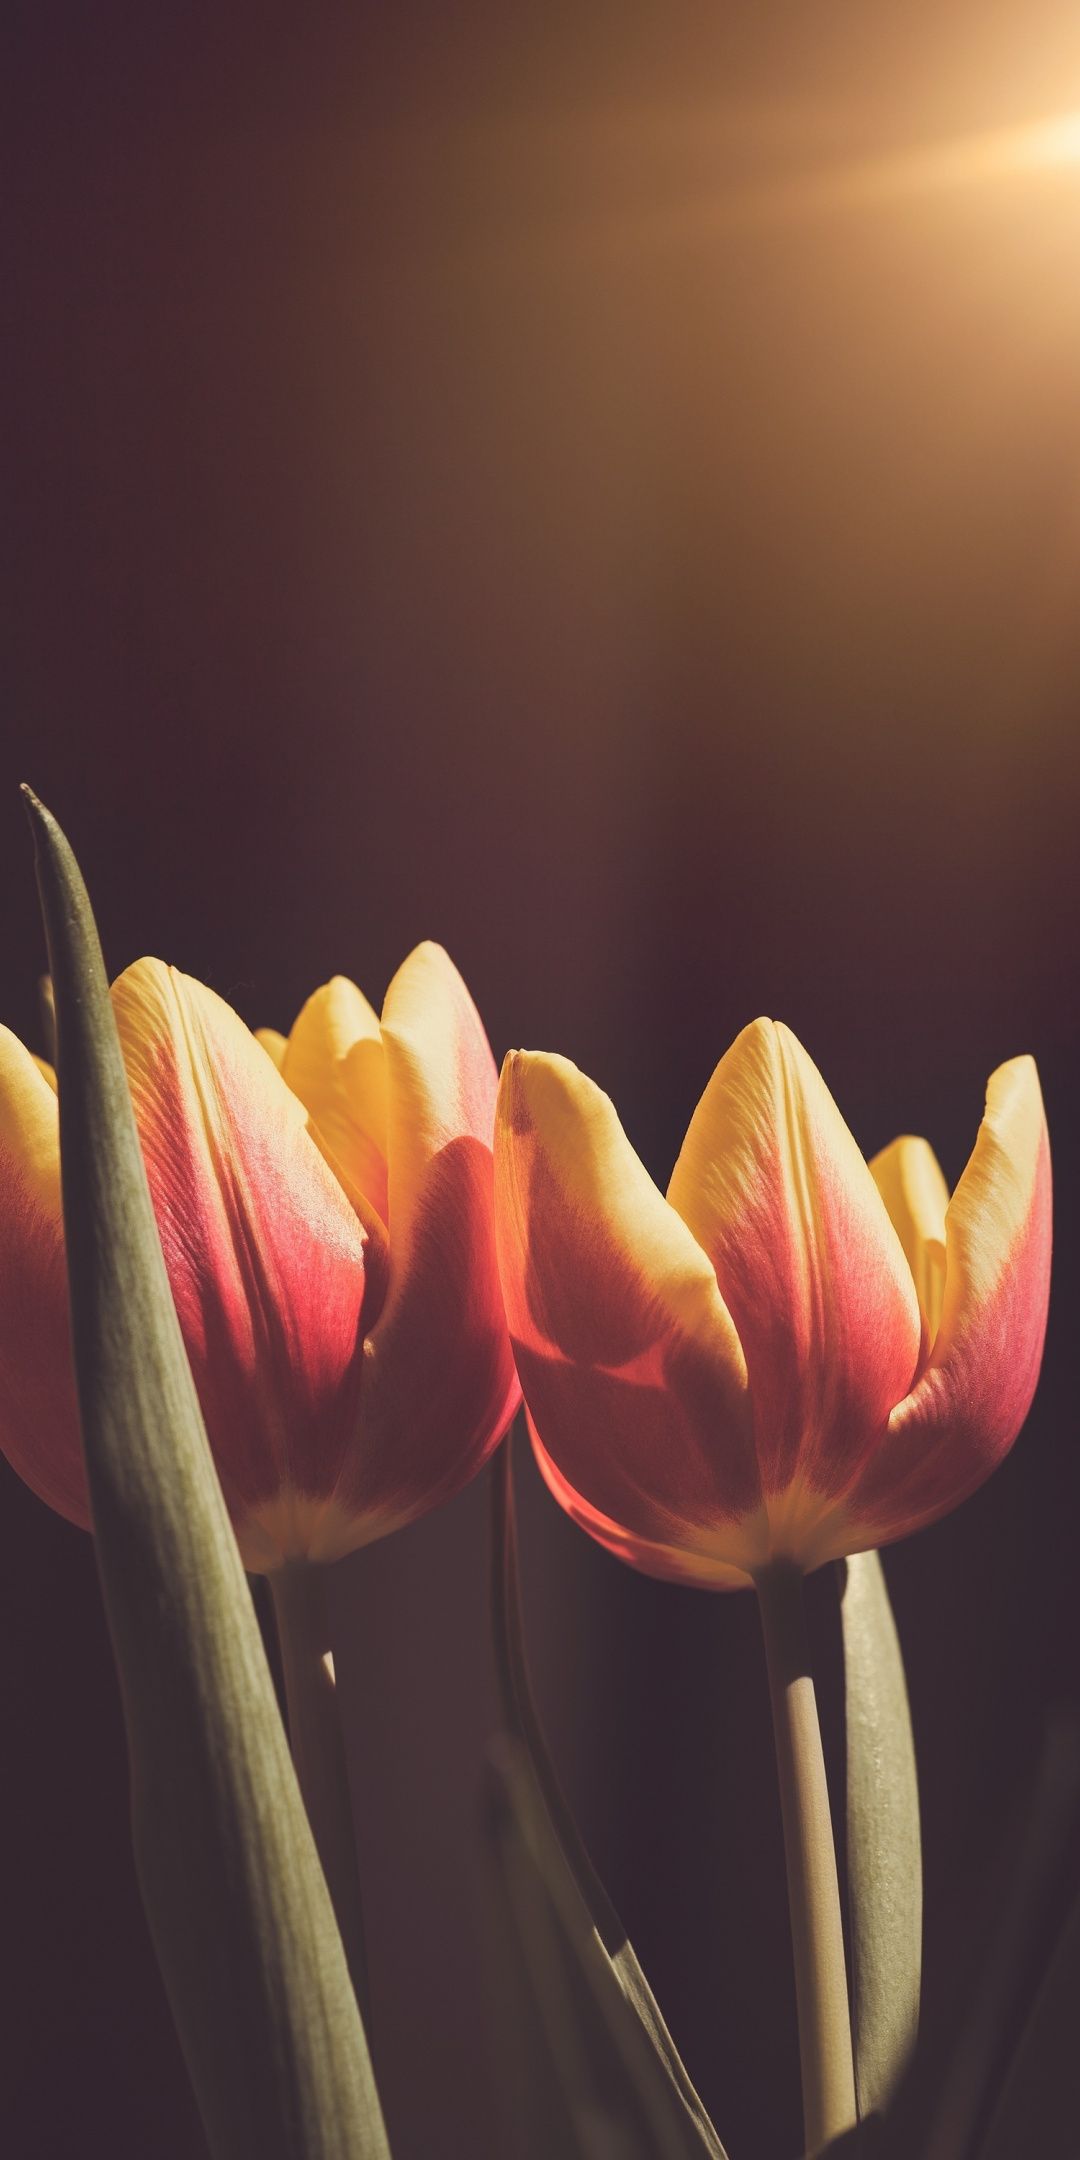 Dành cho những tín đồ yêu hoa tulip, hình nền hoa tulip sẽ khiến bạn thỏa mãn đam mê của mình. Nét đơn giản, uyển chuyển và tươi sáng của hoa tulip sẽ khiến cho chiếc điện thoại của bạn trở nên nổi bật và nữ tính hơn. Hãy khám phá những hình ảnh hoa tulip đẹp này và thưởng thức cảm giác thanh lịch, nhẹ nhàng của chúng.